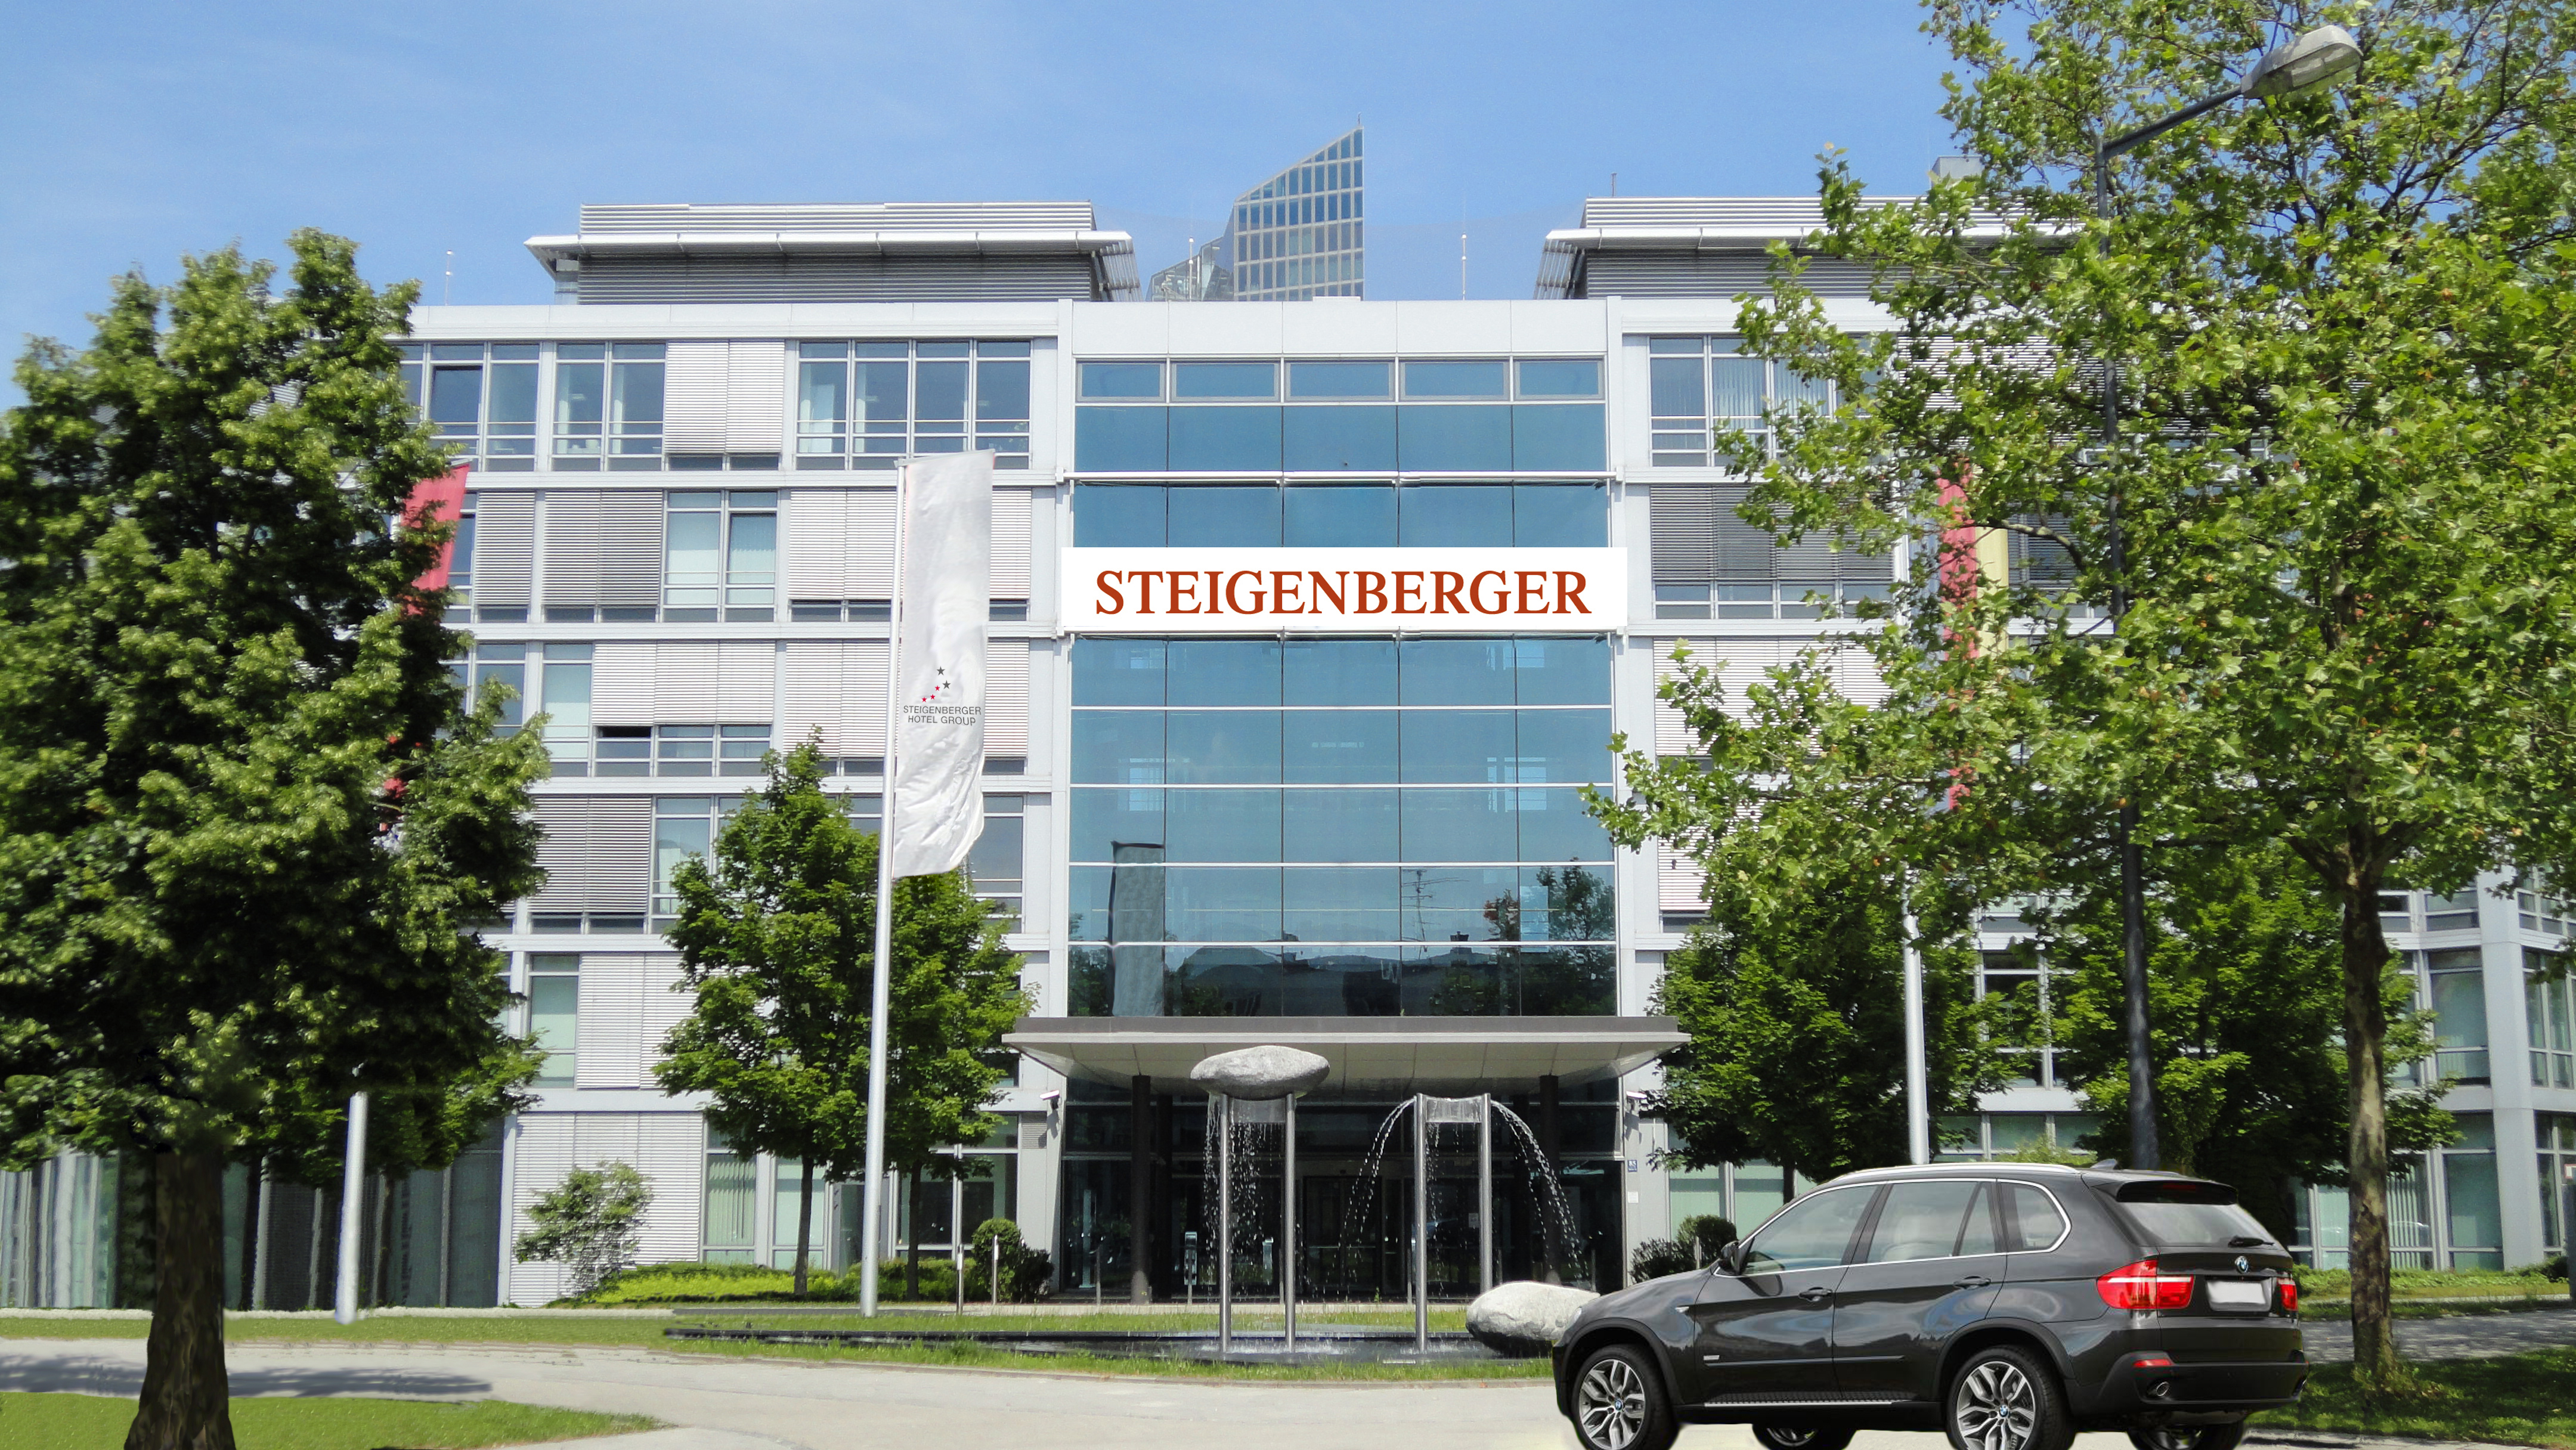 Steigenberger Hotel München im ehemaligen Versicherungsgebäude - Eröffnung soll 2017 sein